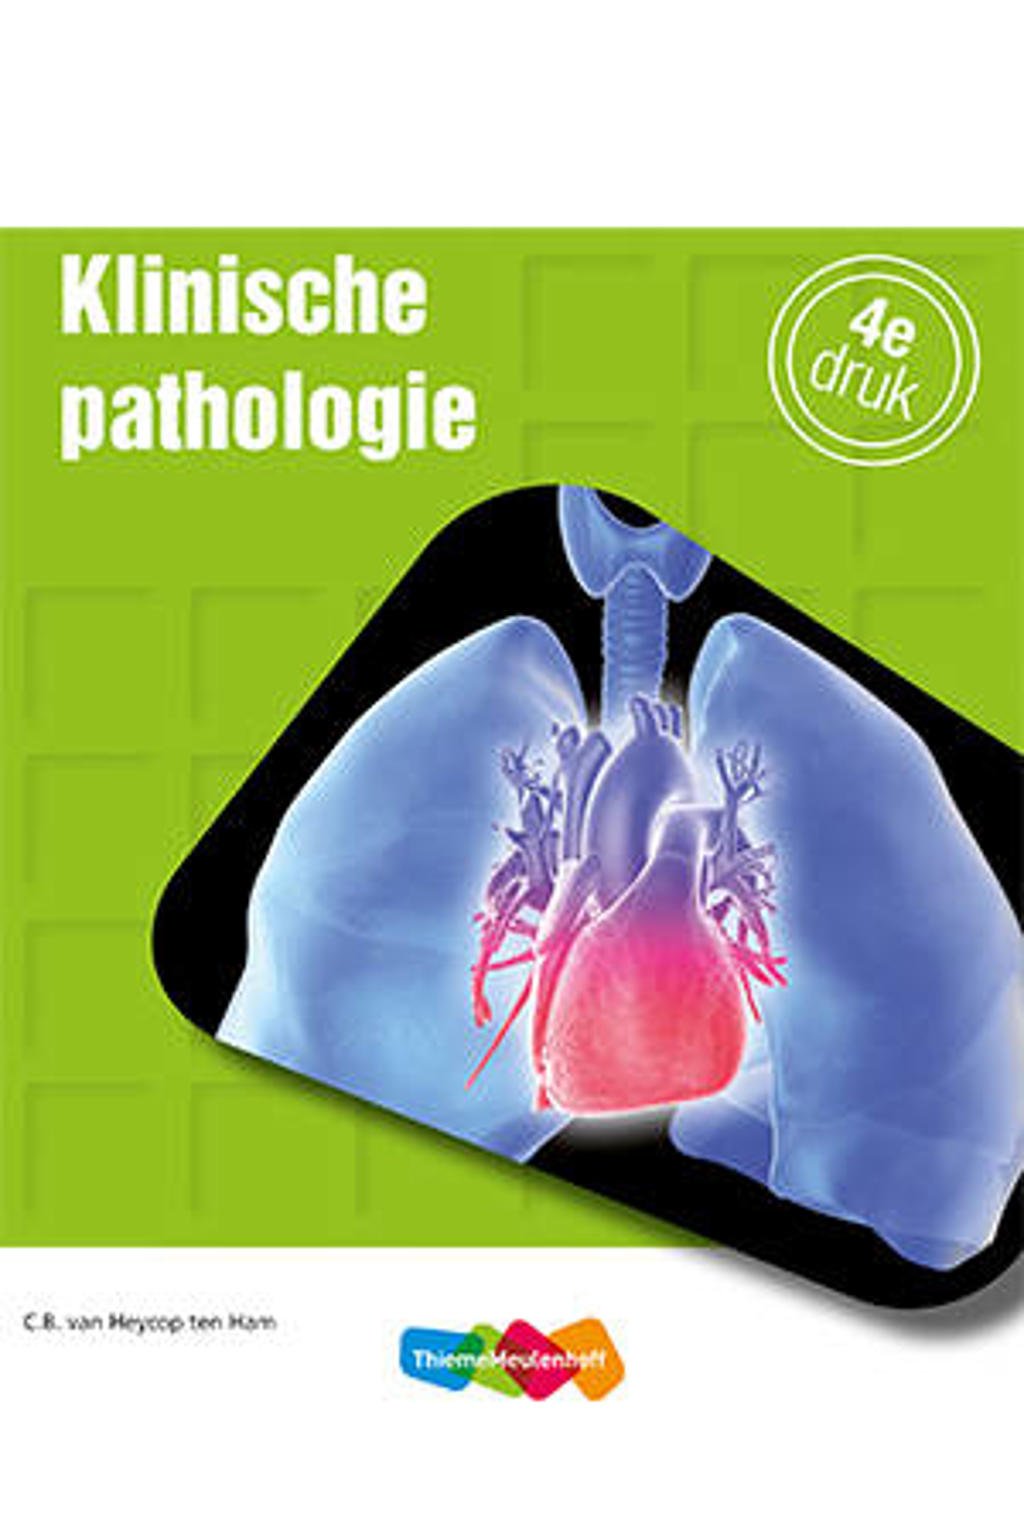 Klinische pathologie - C.B. van Heycop ten Ham